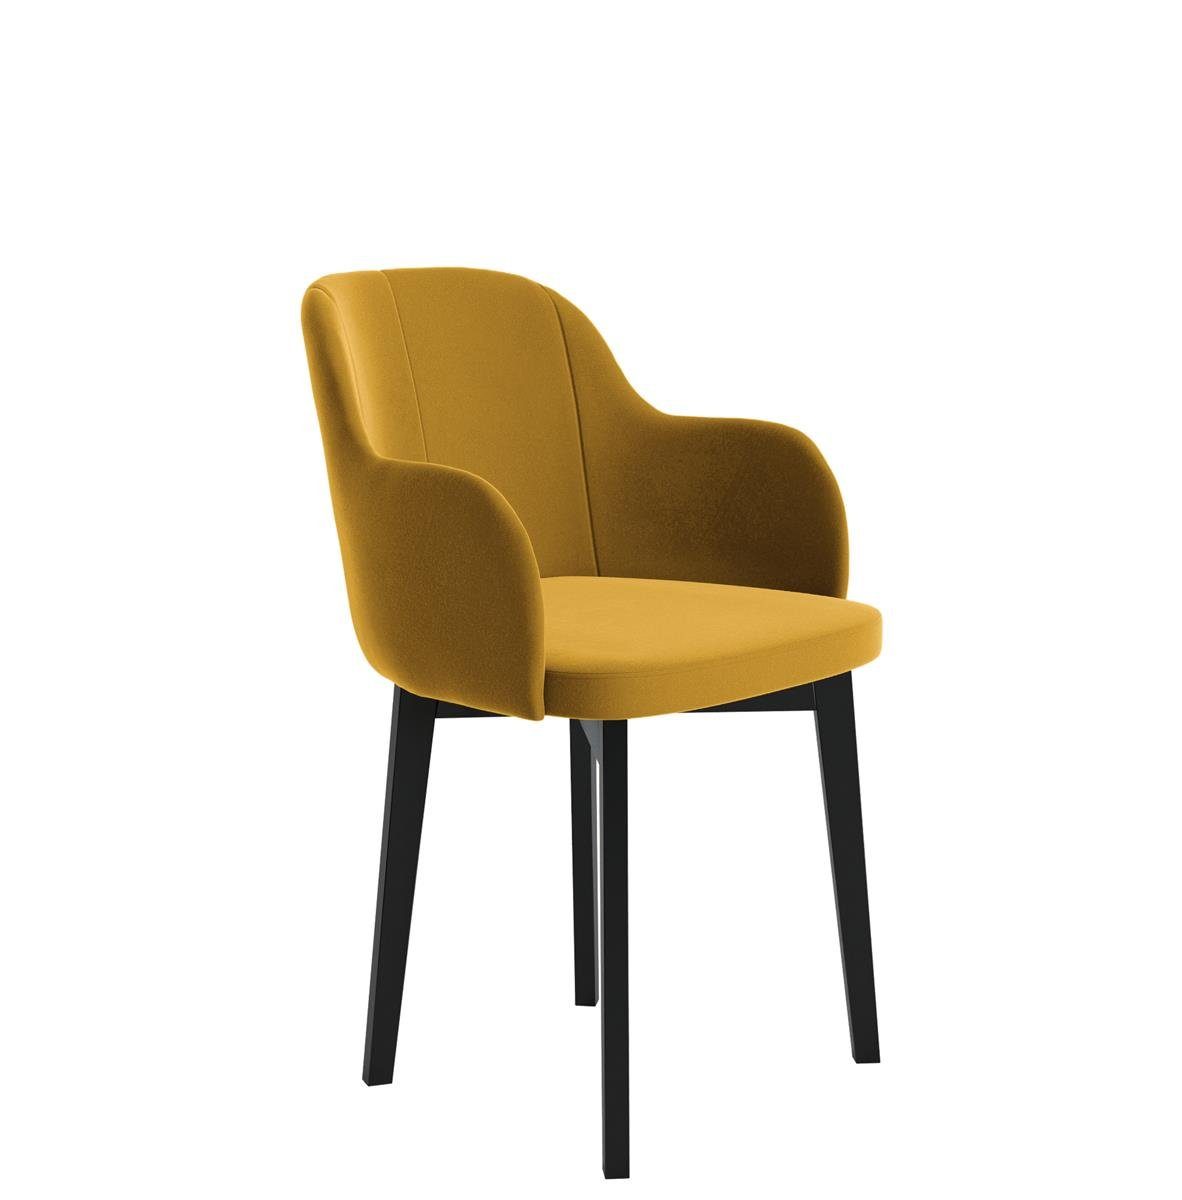 Beautysofa Polsterstuhl Relax (aus Veloursstoff), Stuhl für Wohnzimmer oder Büro, Relaxstuhl mit Holzbeine Gelb (riviera 41) | Polsterstühle